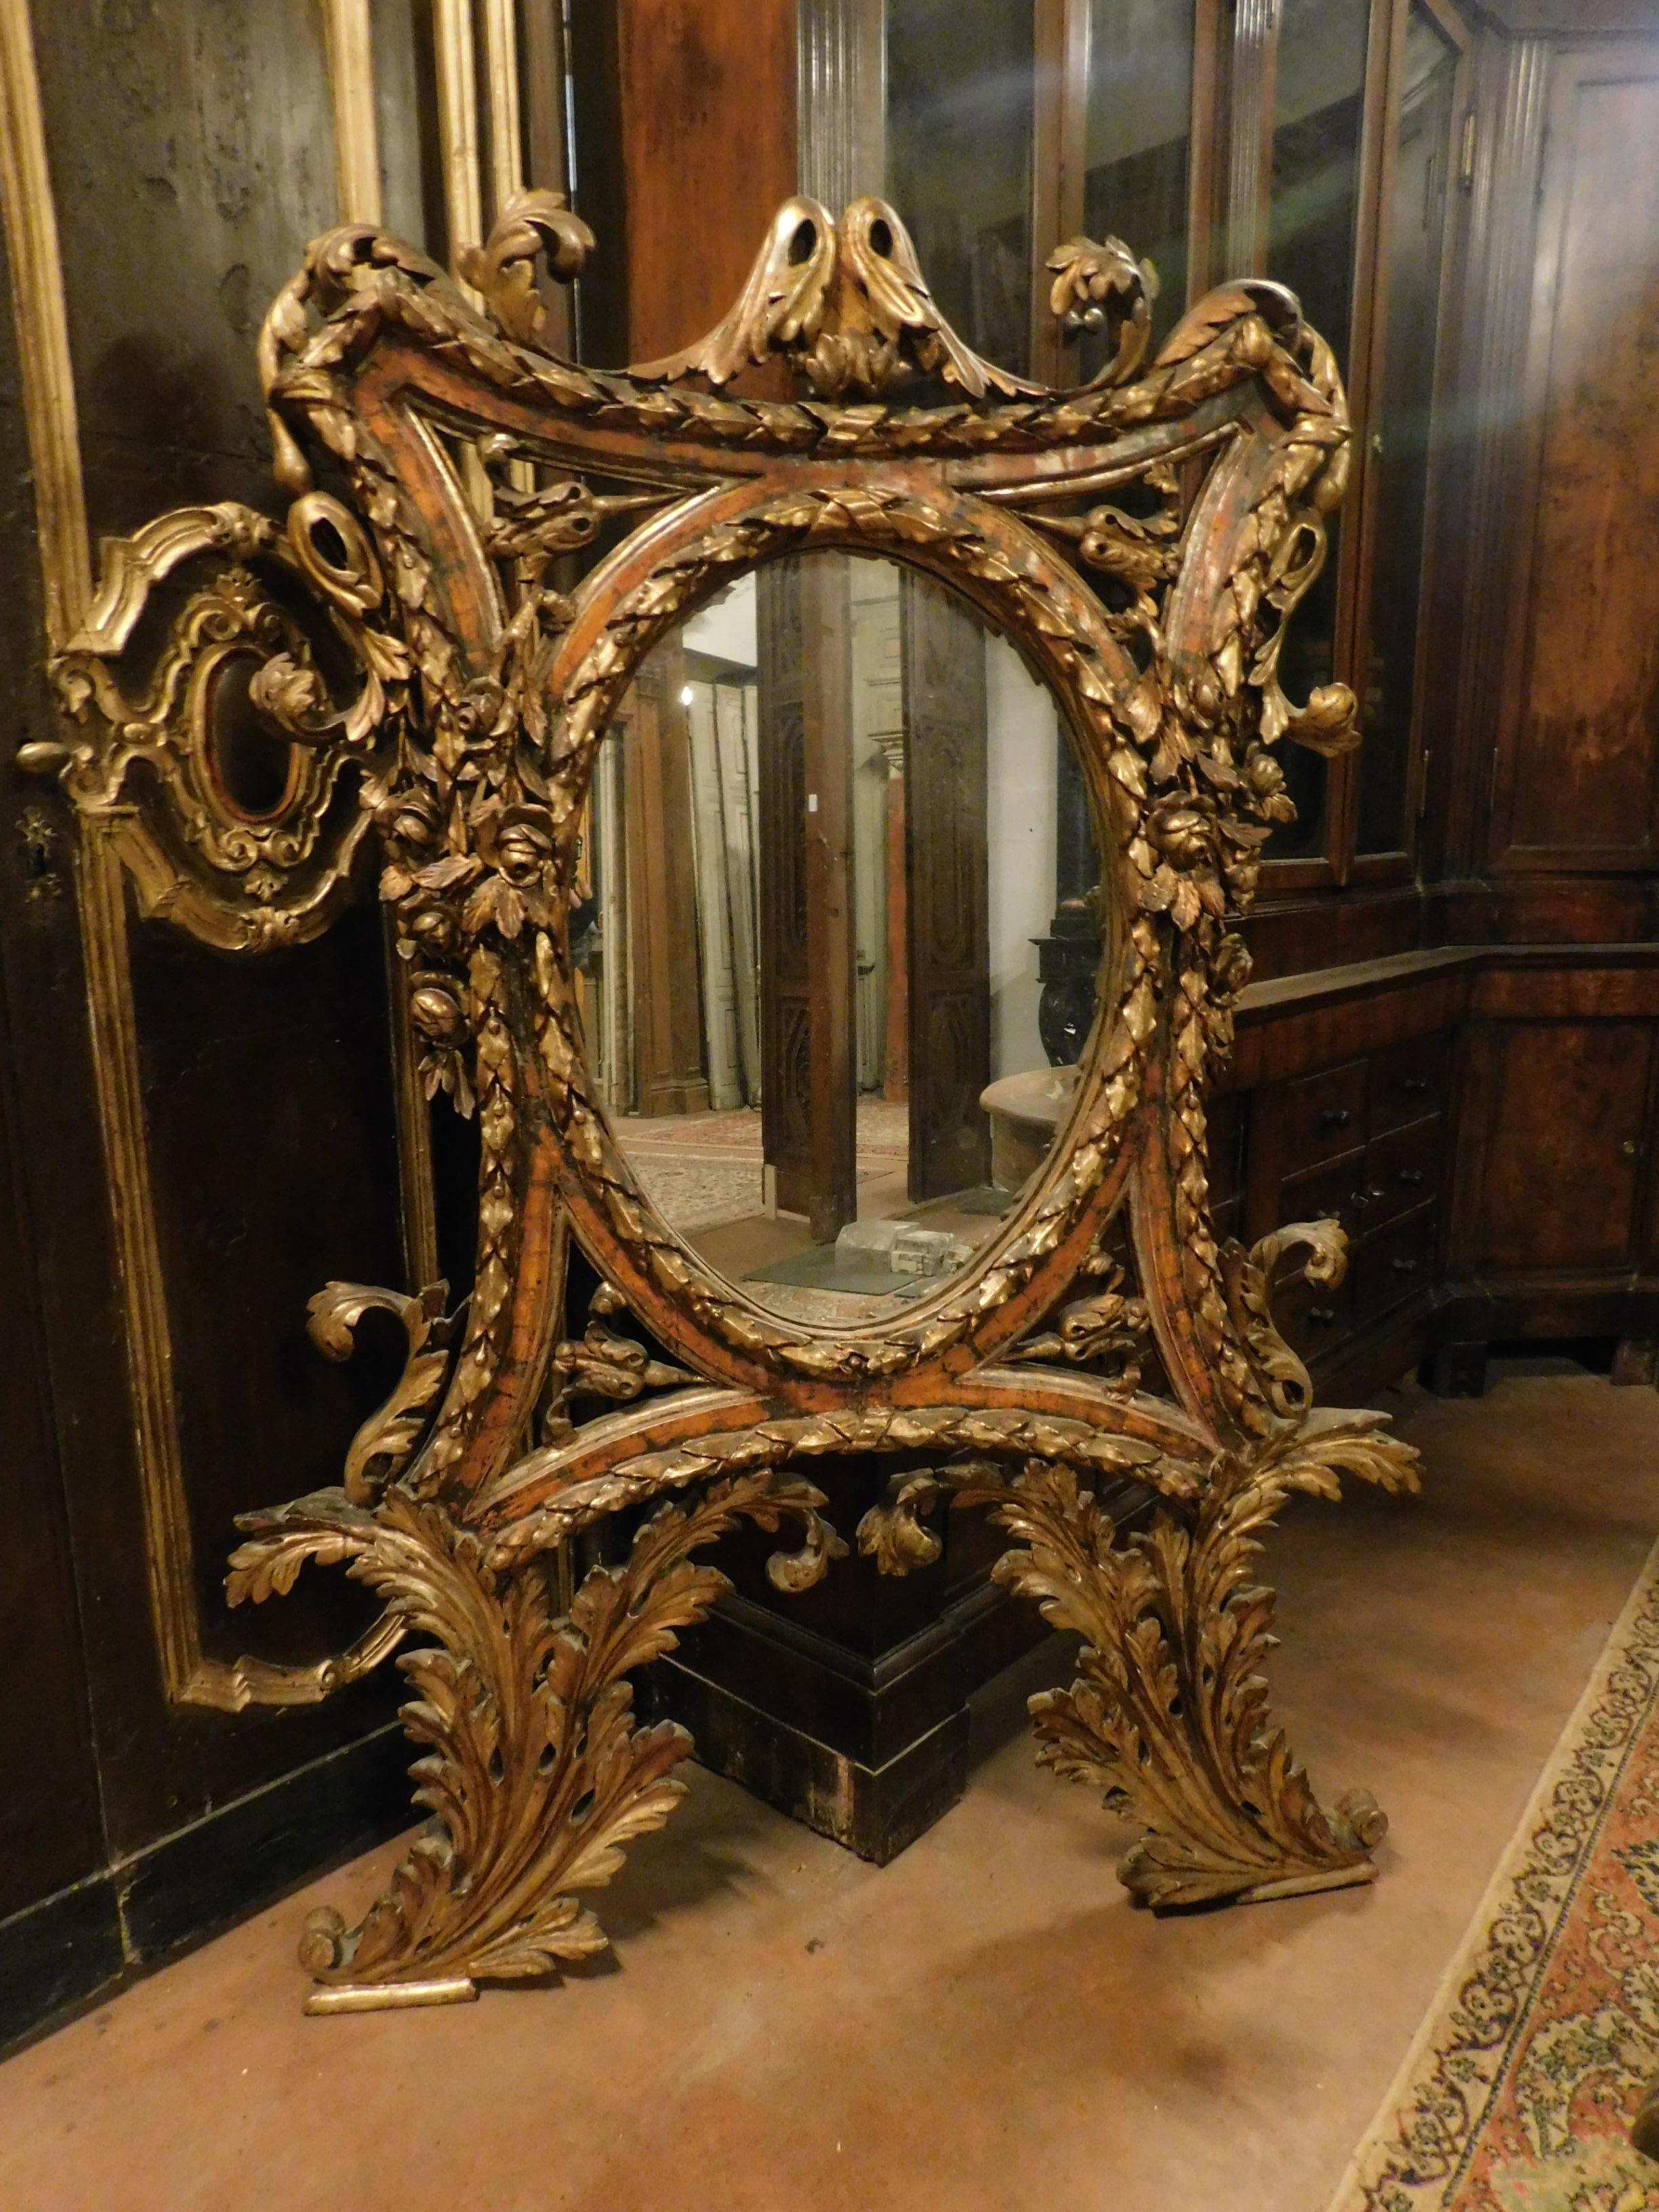 Miroir ancien doré à la mecque, sur Bolus rouge, avec de très riches sculptures faites à la main représentant des feuilles et des volutes, du début du dix-huitième siècle, provenant d'un important palais en Italie.
En bon état de conservation,